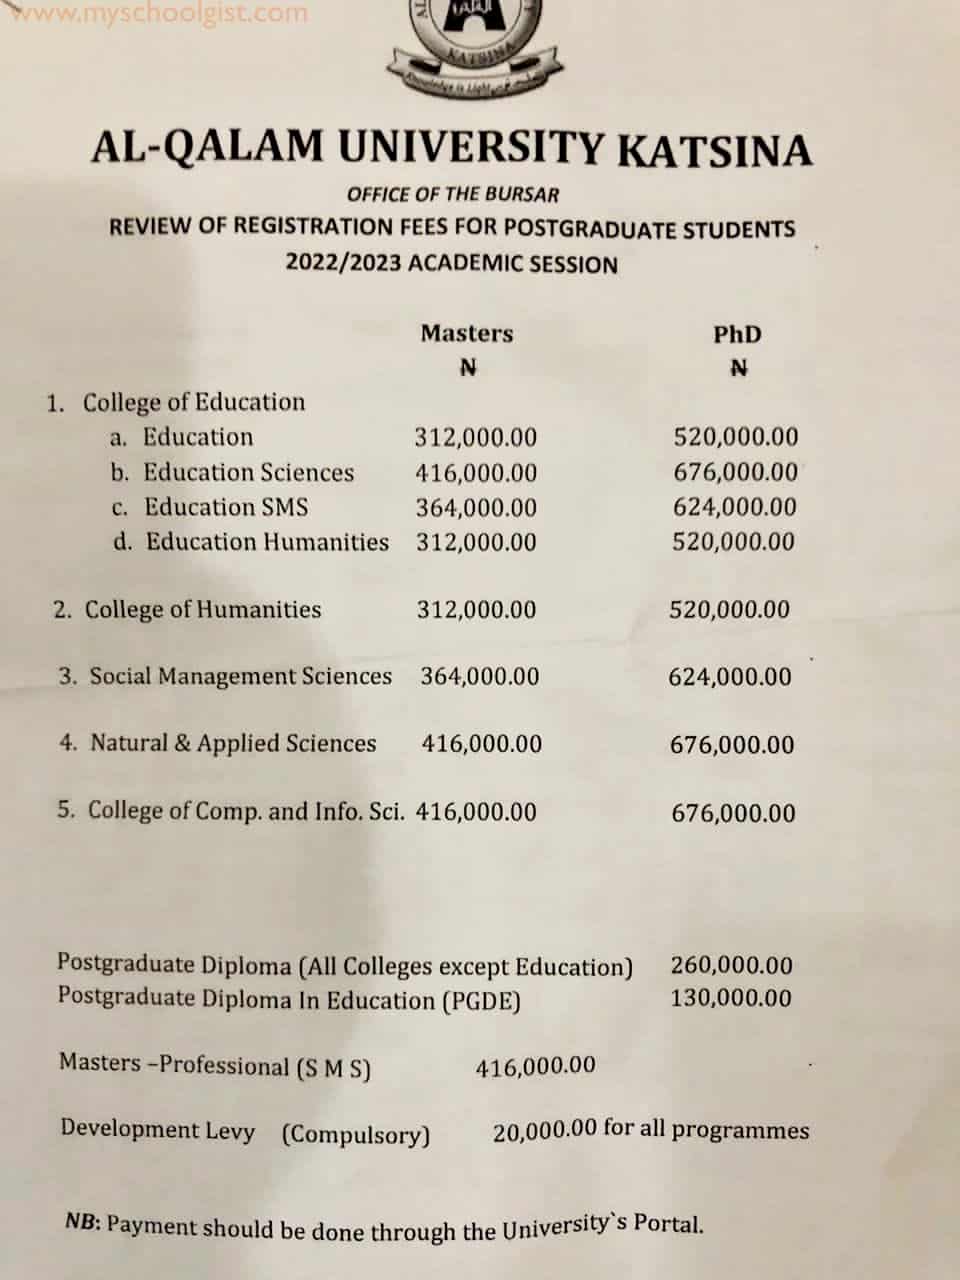 Al-Qalam University Katsina (AUK) Postgraduate School Fees - Registration Fee